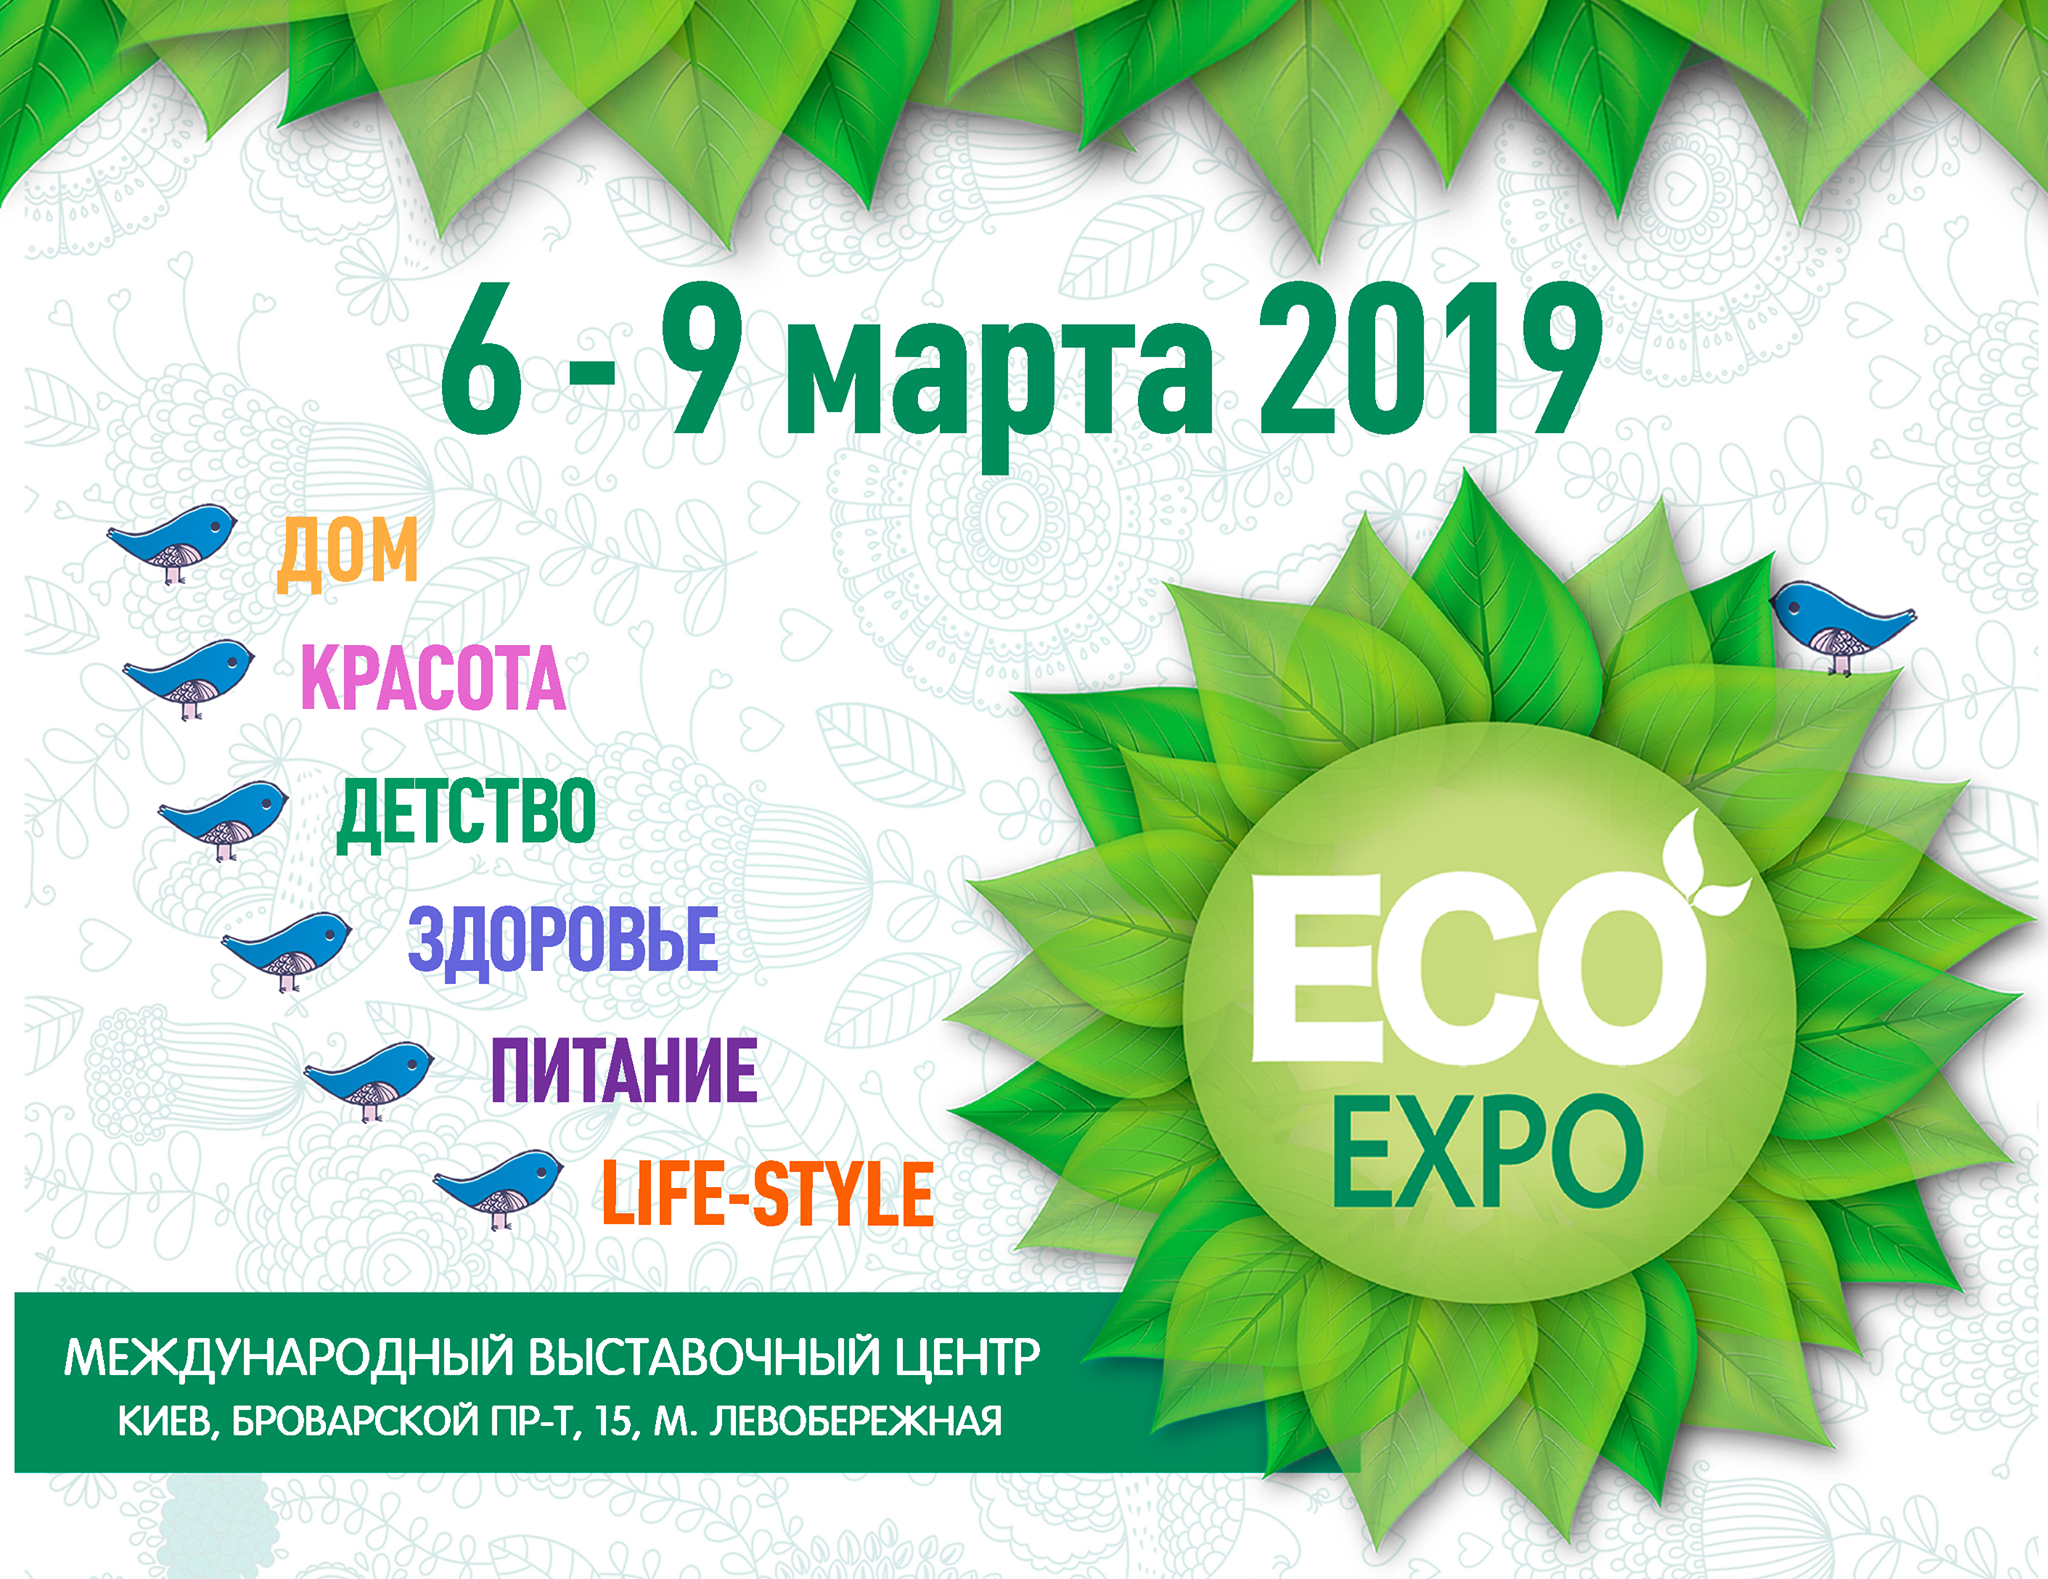 XIV Міжнародна виставка екотоварів та послуг для здорового способу життя ЕCO-Expo